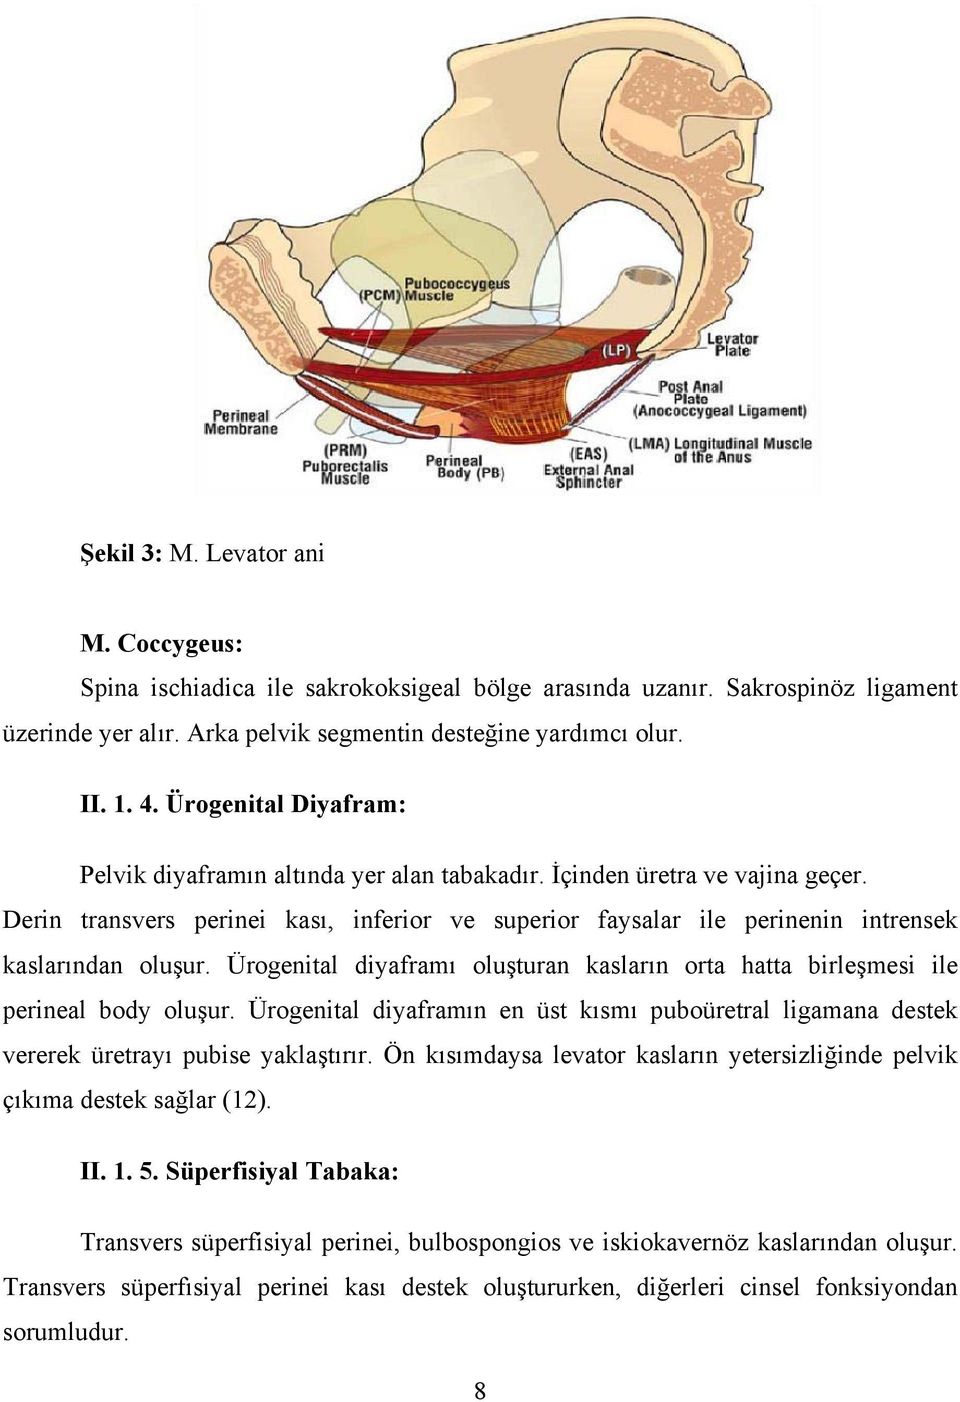 Derin transvers perinei kası, inferior ve superior faysalar ile perinenin intrensek kaslarından oluşur. Ürogenital diyaframı oluşturan kasların orta hatta birleşmesi ile perineal body oluşur.